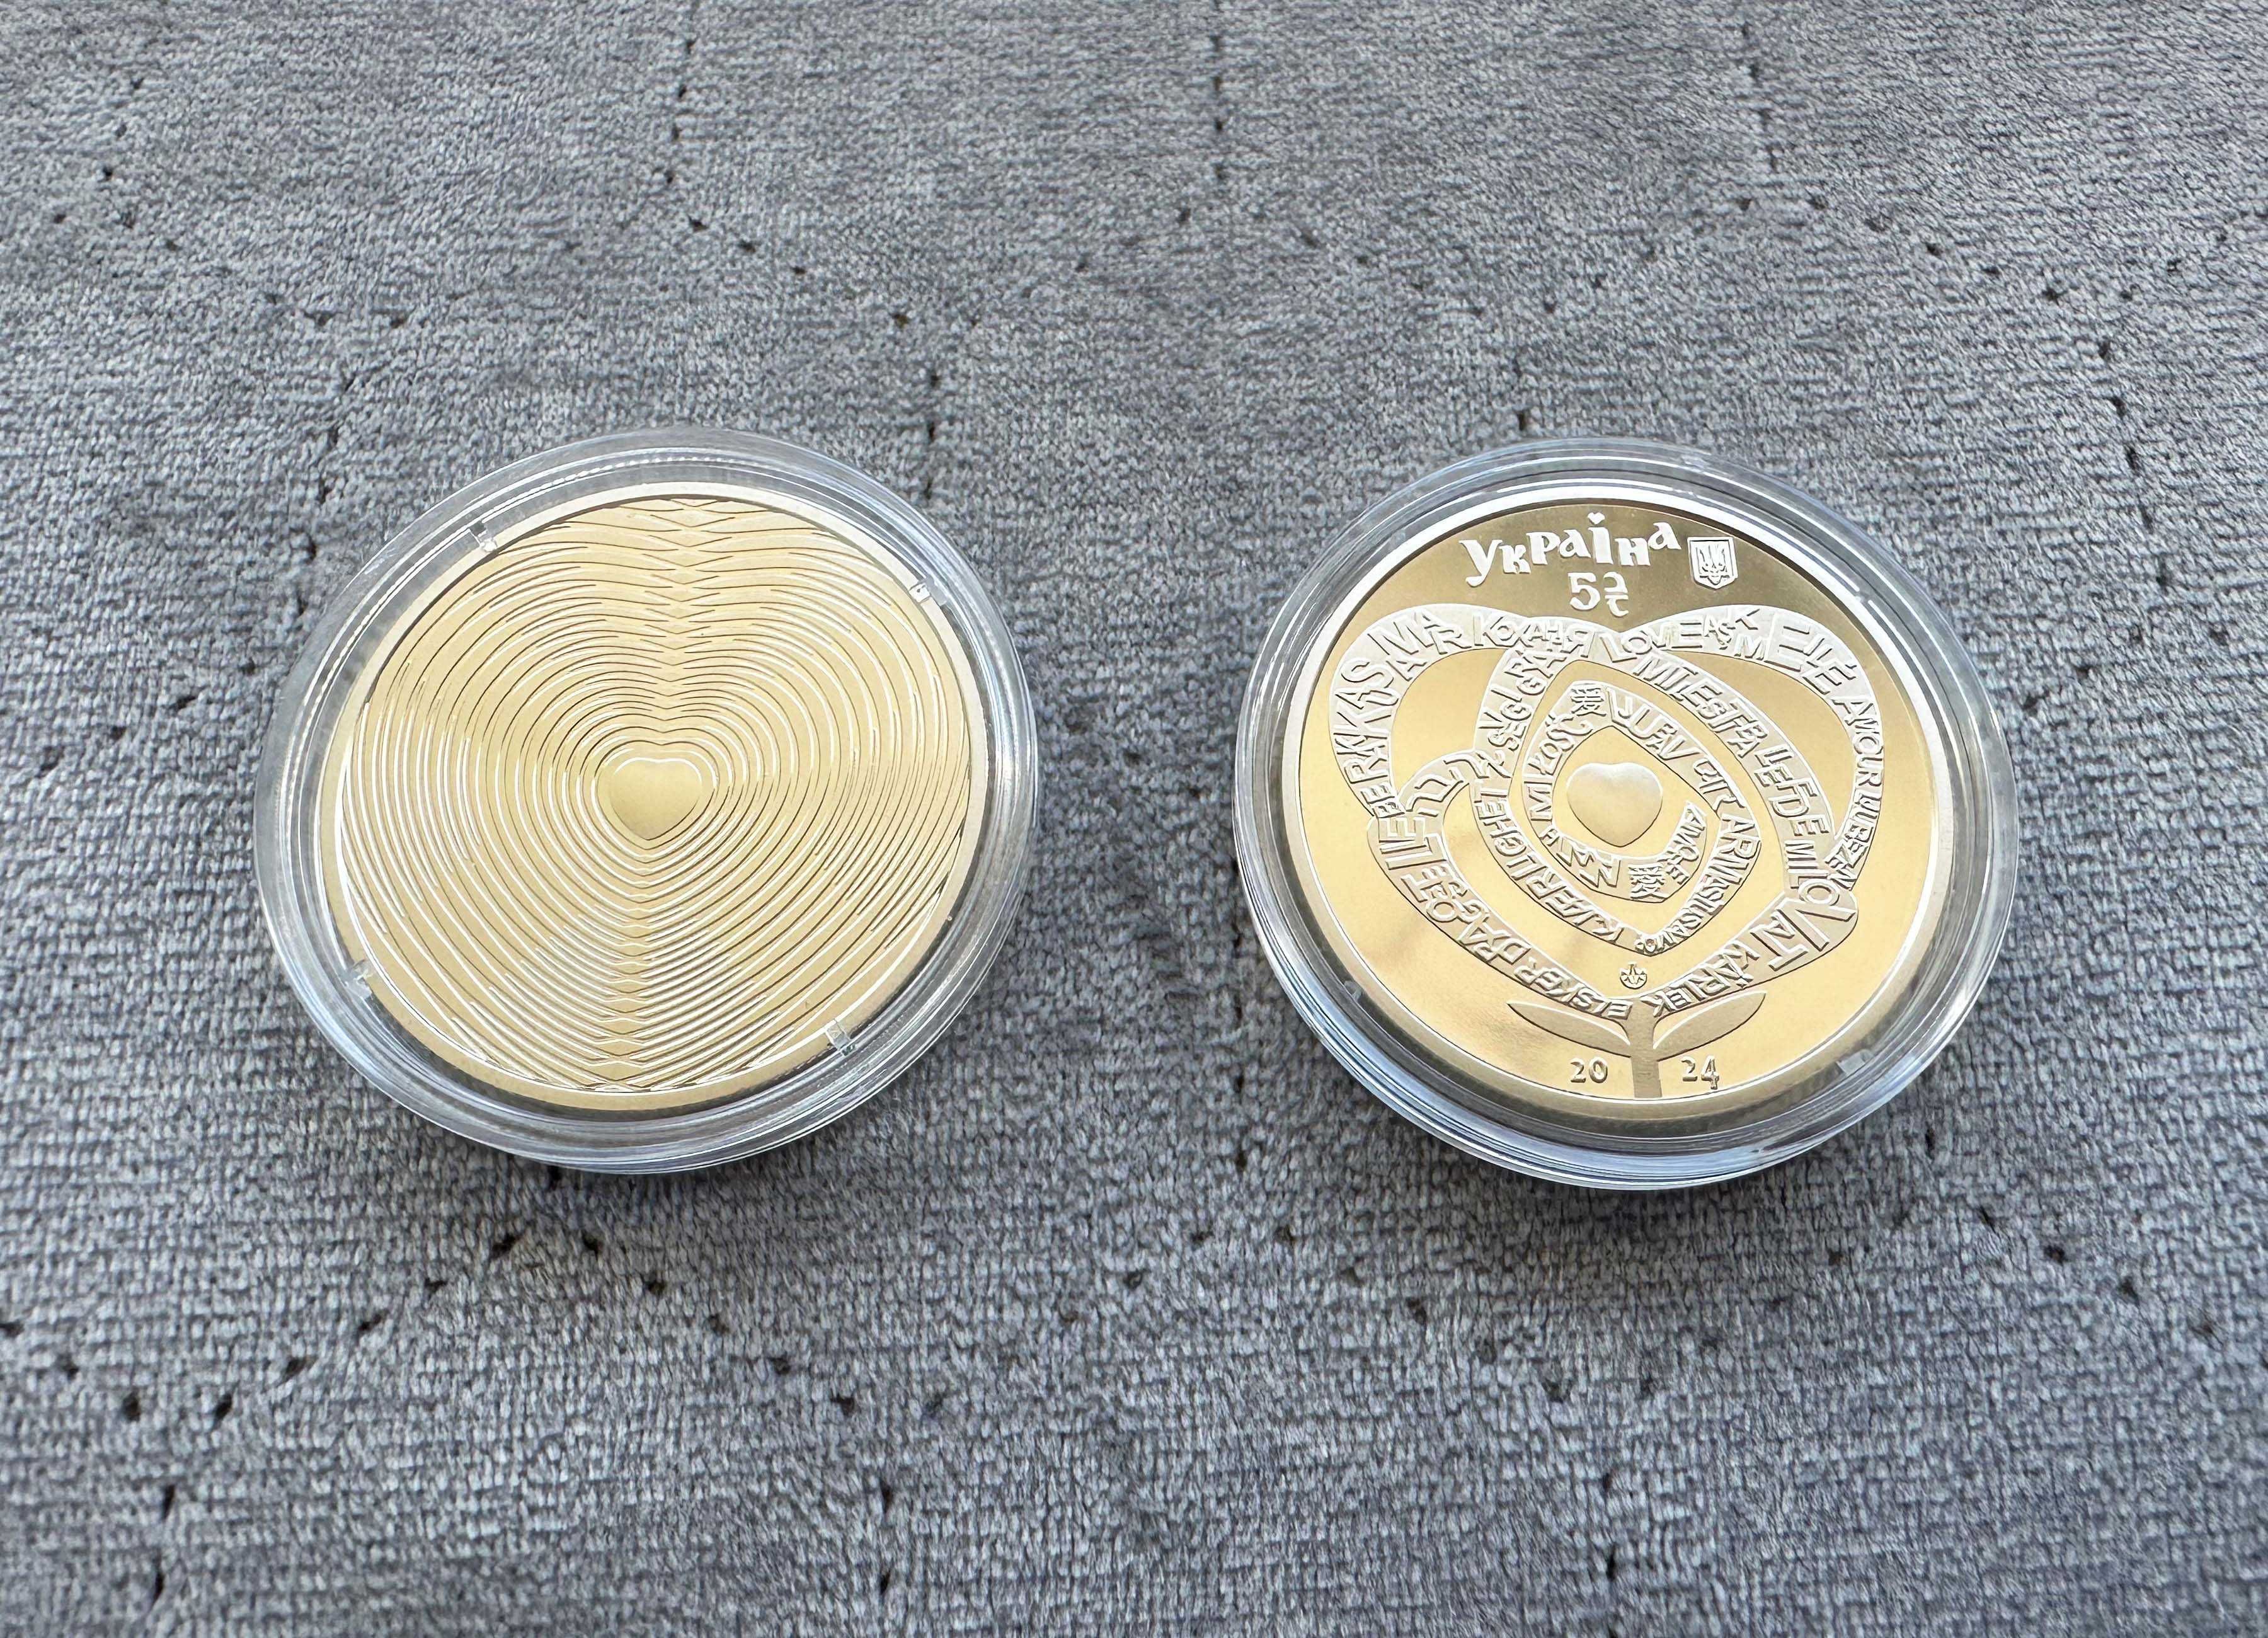 Пам'ятна монета НБУ "Кохання" у сувенірній упаковці